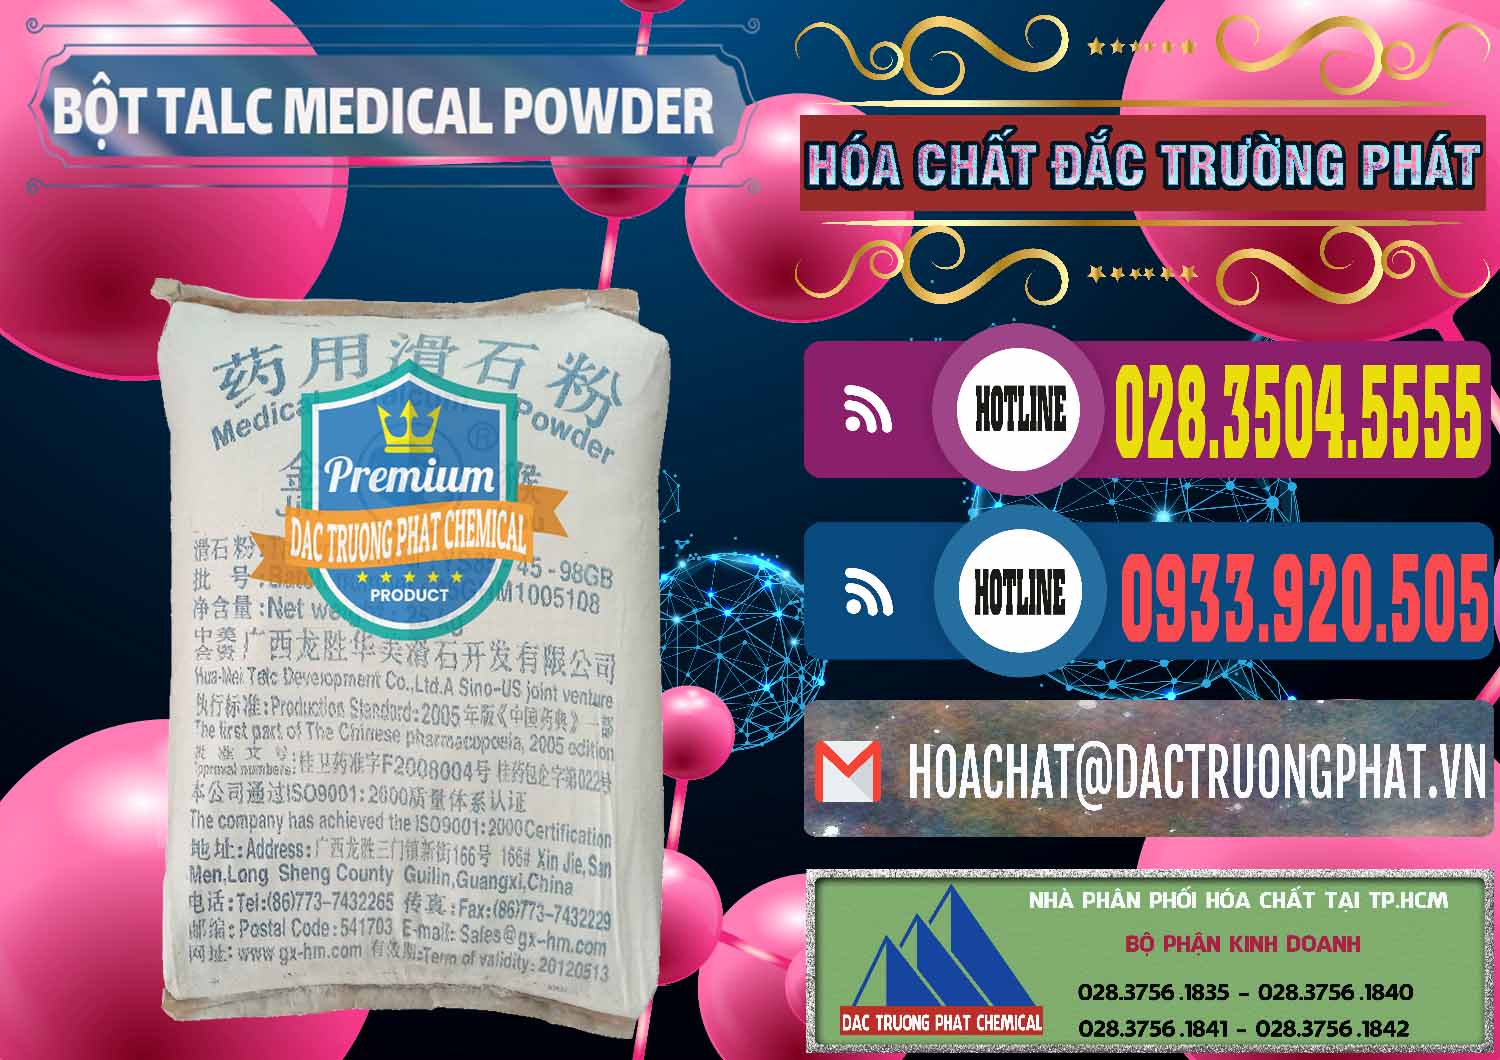 Kinh doanh & bán Bột Talc Medical Powder Trung Quốc China - 0036 - Nơi chuyên phân phối _ kinh doanh hóa chất tại TP.HCM - muabanhoachat.com.vn